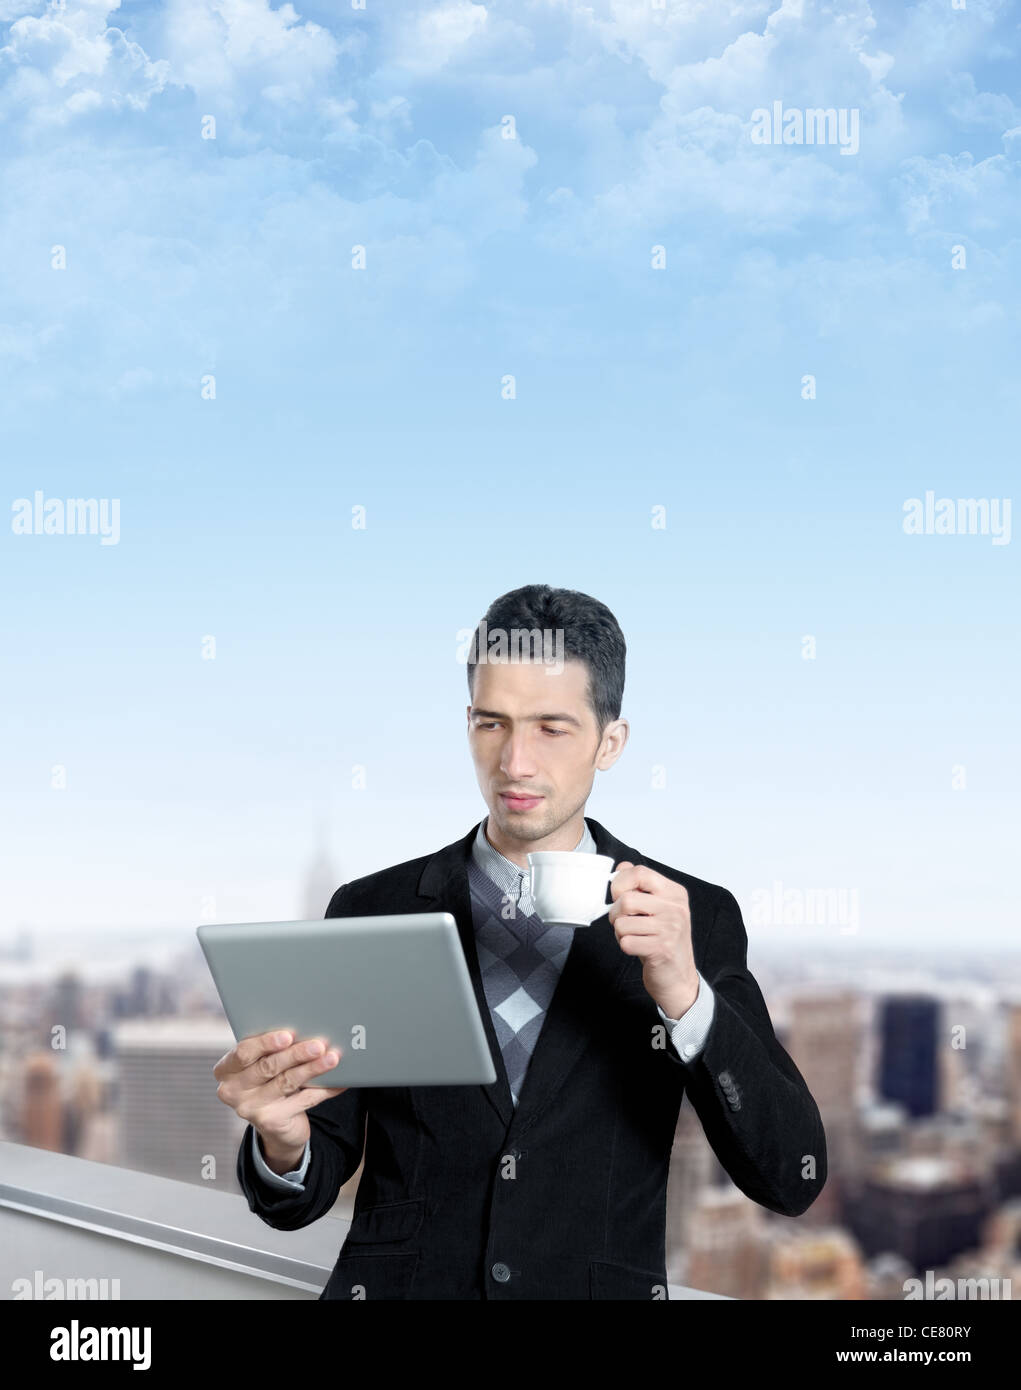 Jeune homme avec une tasse de café utilise une tablette numérique sur le toit d'un centre d'affaires. Cityscape floue avec des gratte-ciel Banque D'Images